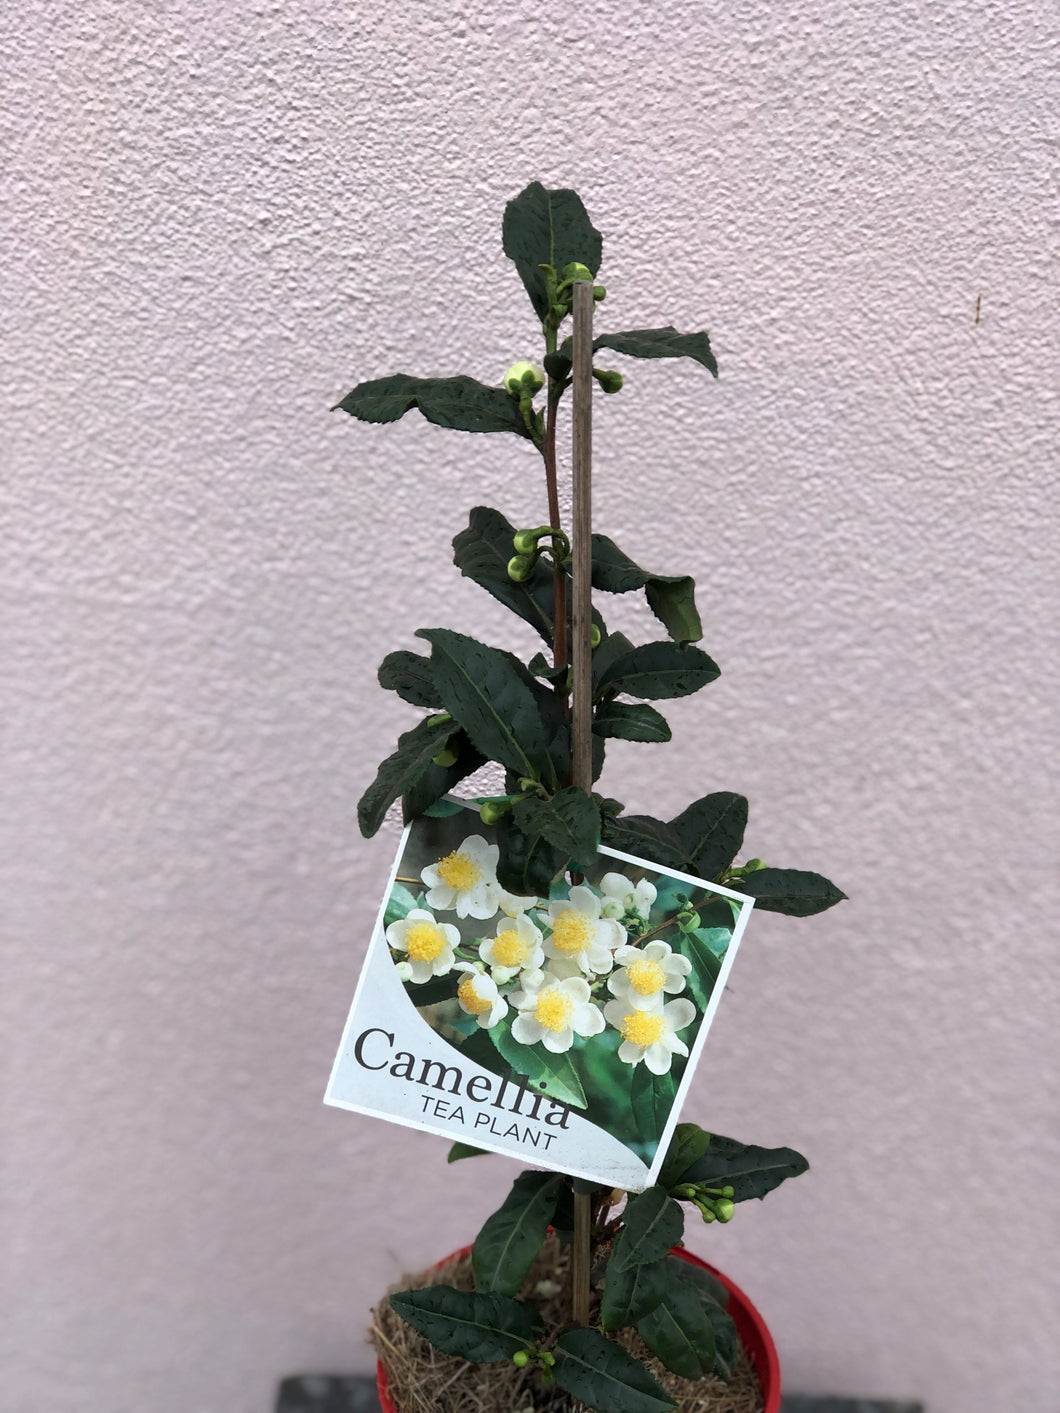 Camellia sinensis ‘Tea Plant’